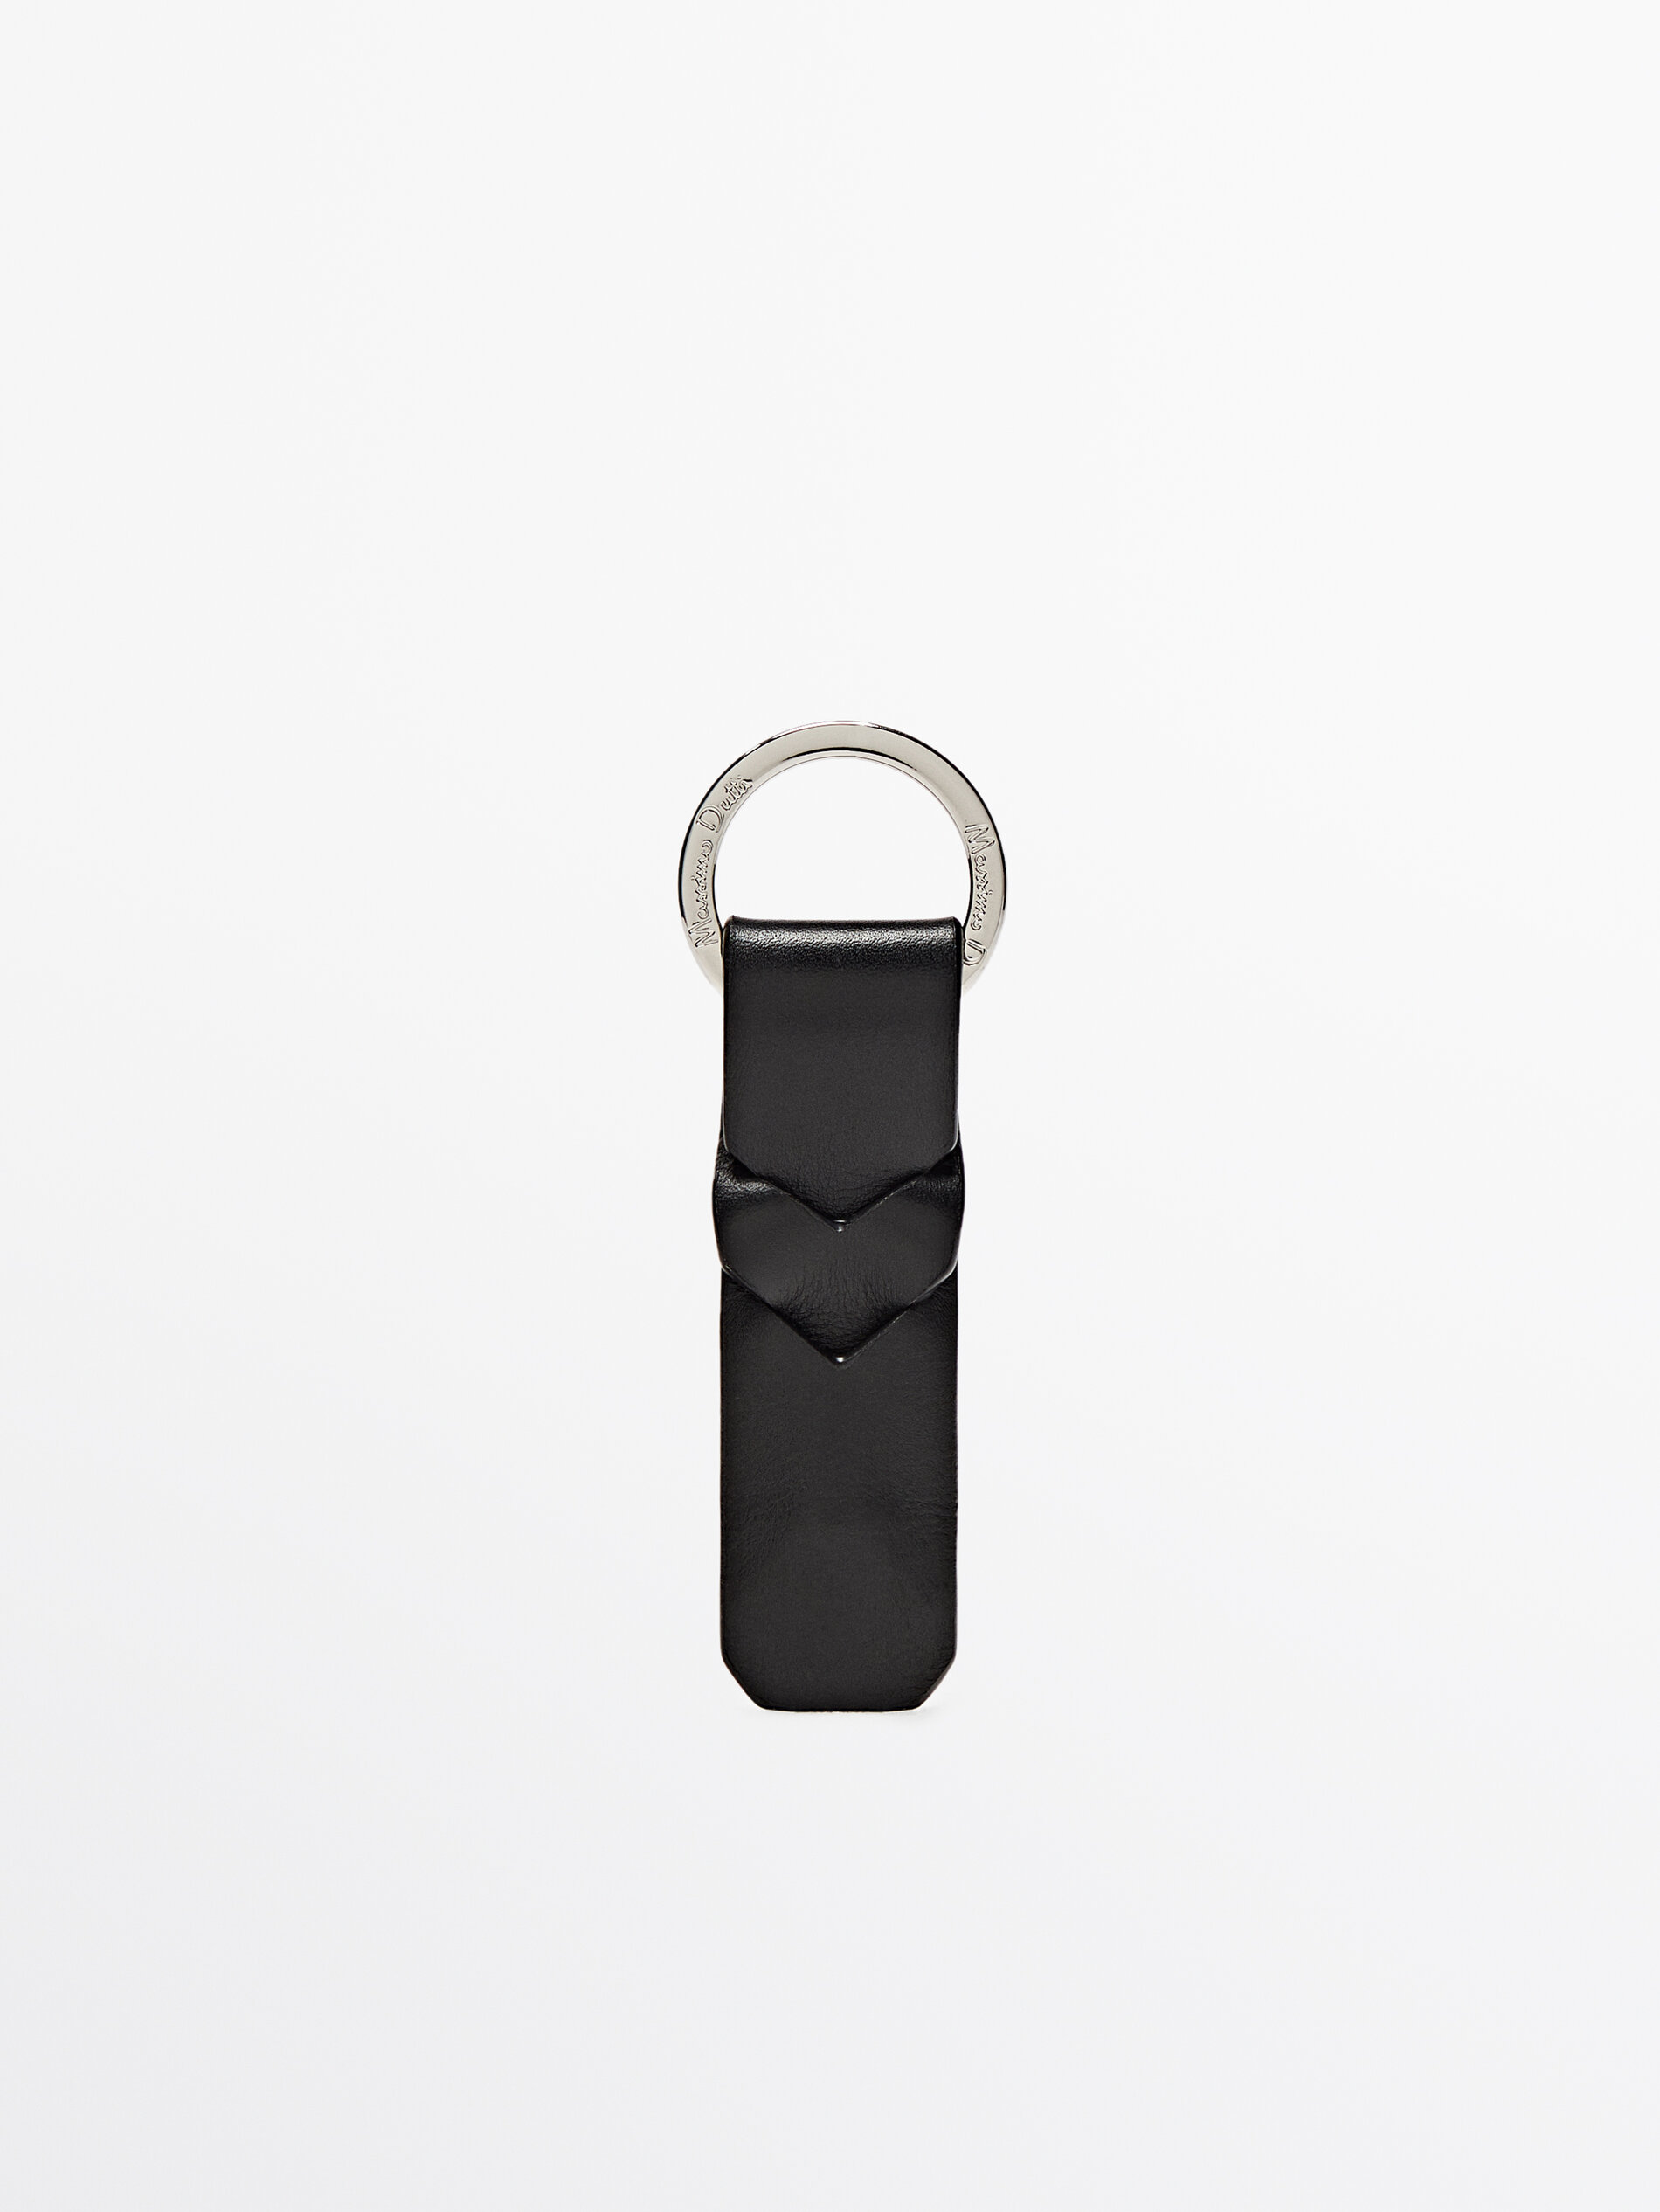 Car Keychain Online | Designer Leather Keychains India – Elegant Auto Retail